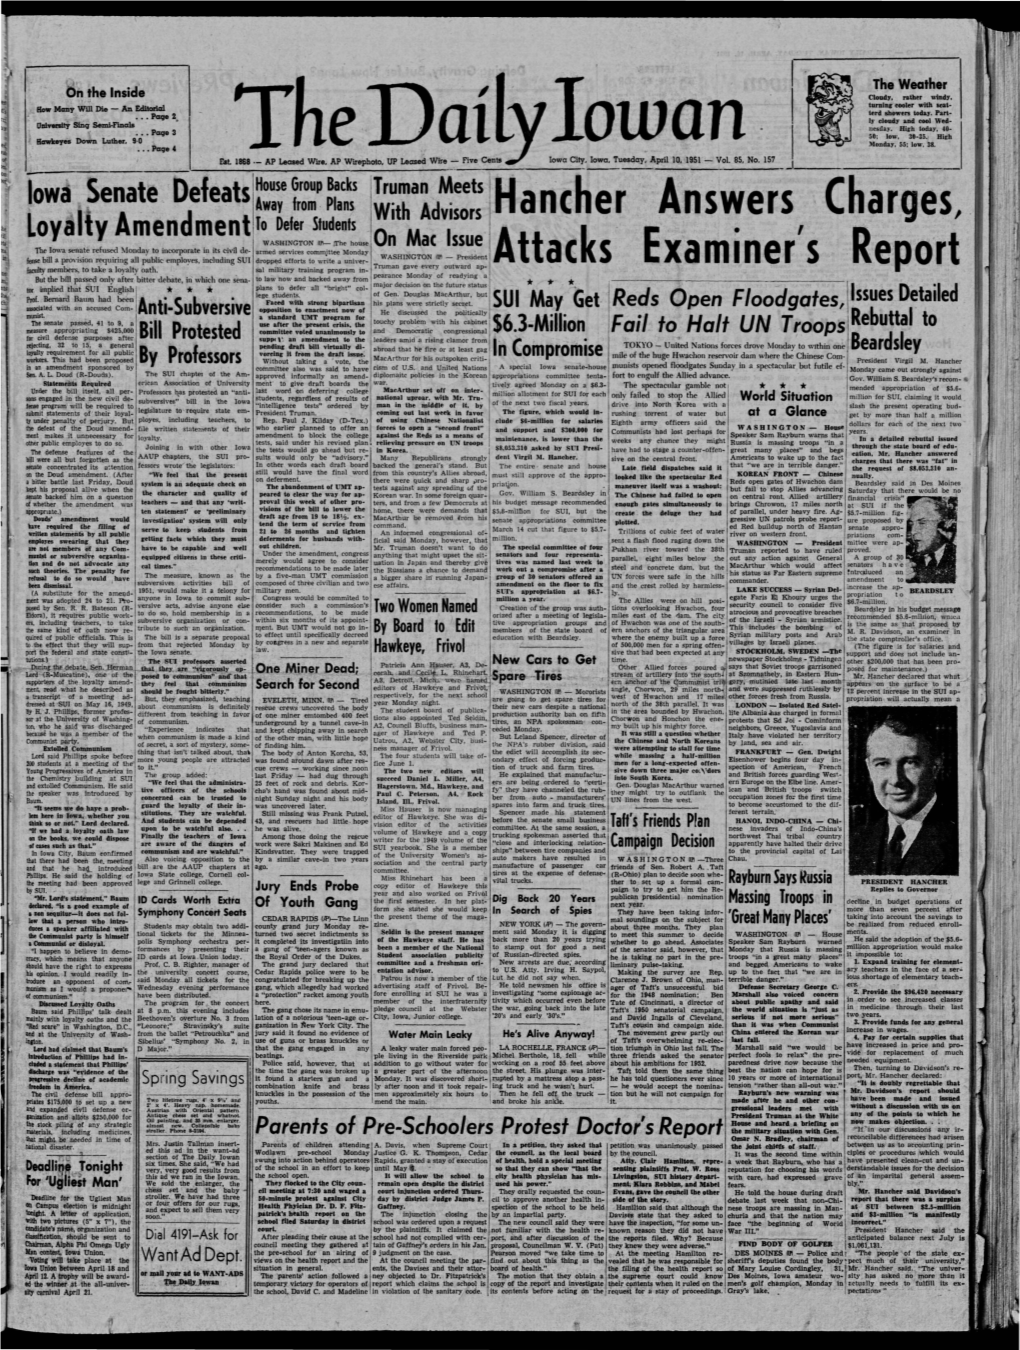 Daily Iowan (Iowa City, Iowa), 1951-04-10